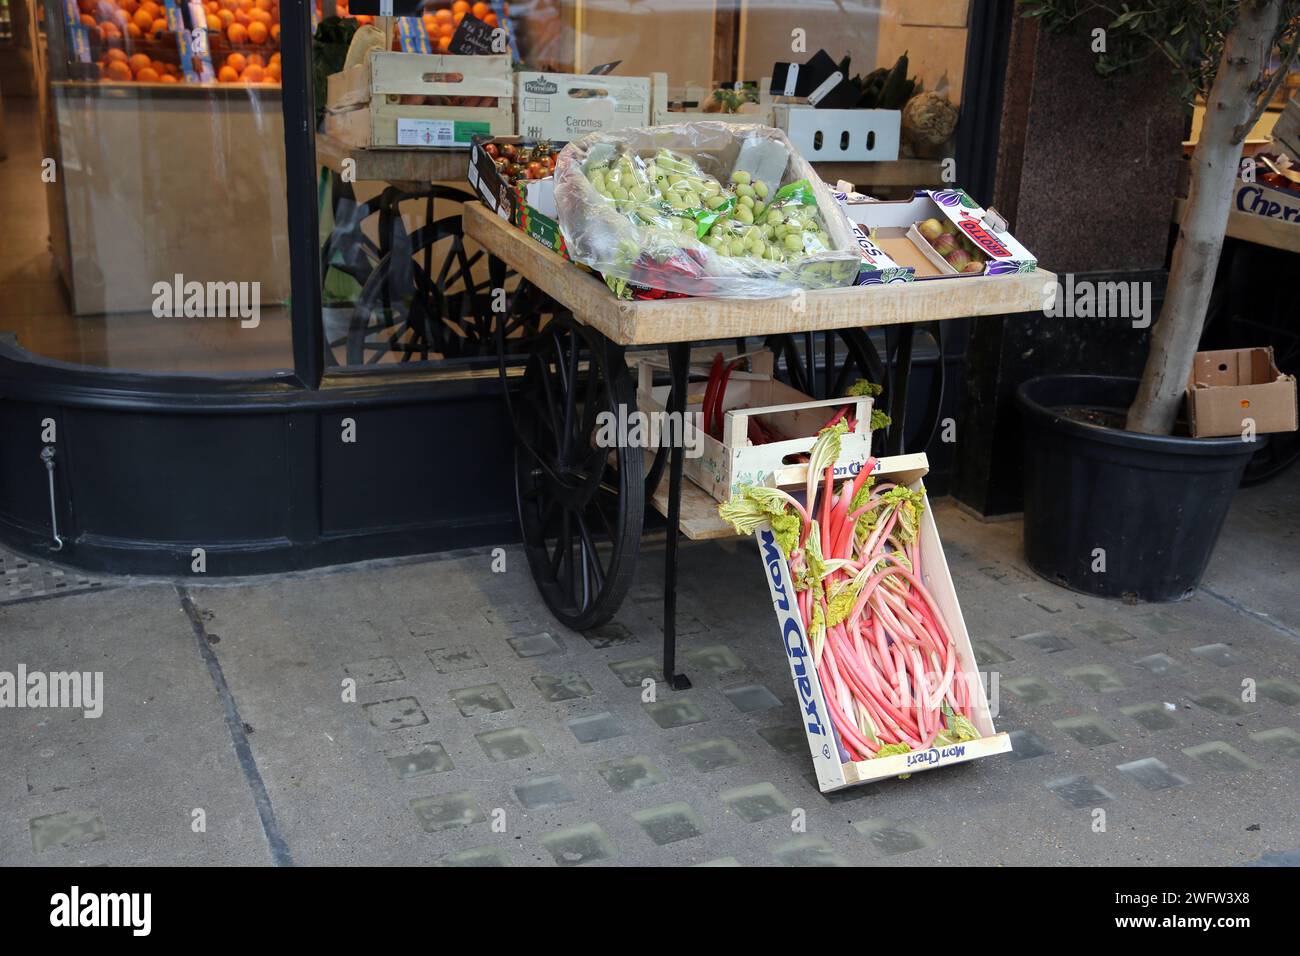 Stand à l'extérieur Andreas Greengrocers vendant figues, rhubarbe, raisins et tomates cale Street Chelsea Londres Angleterre Banque D'Images